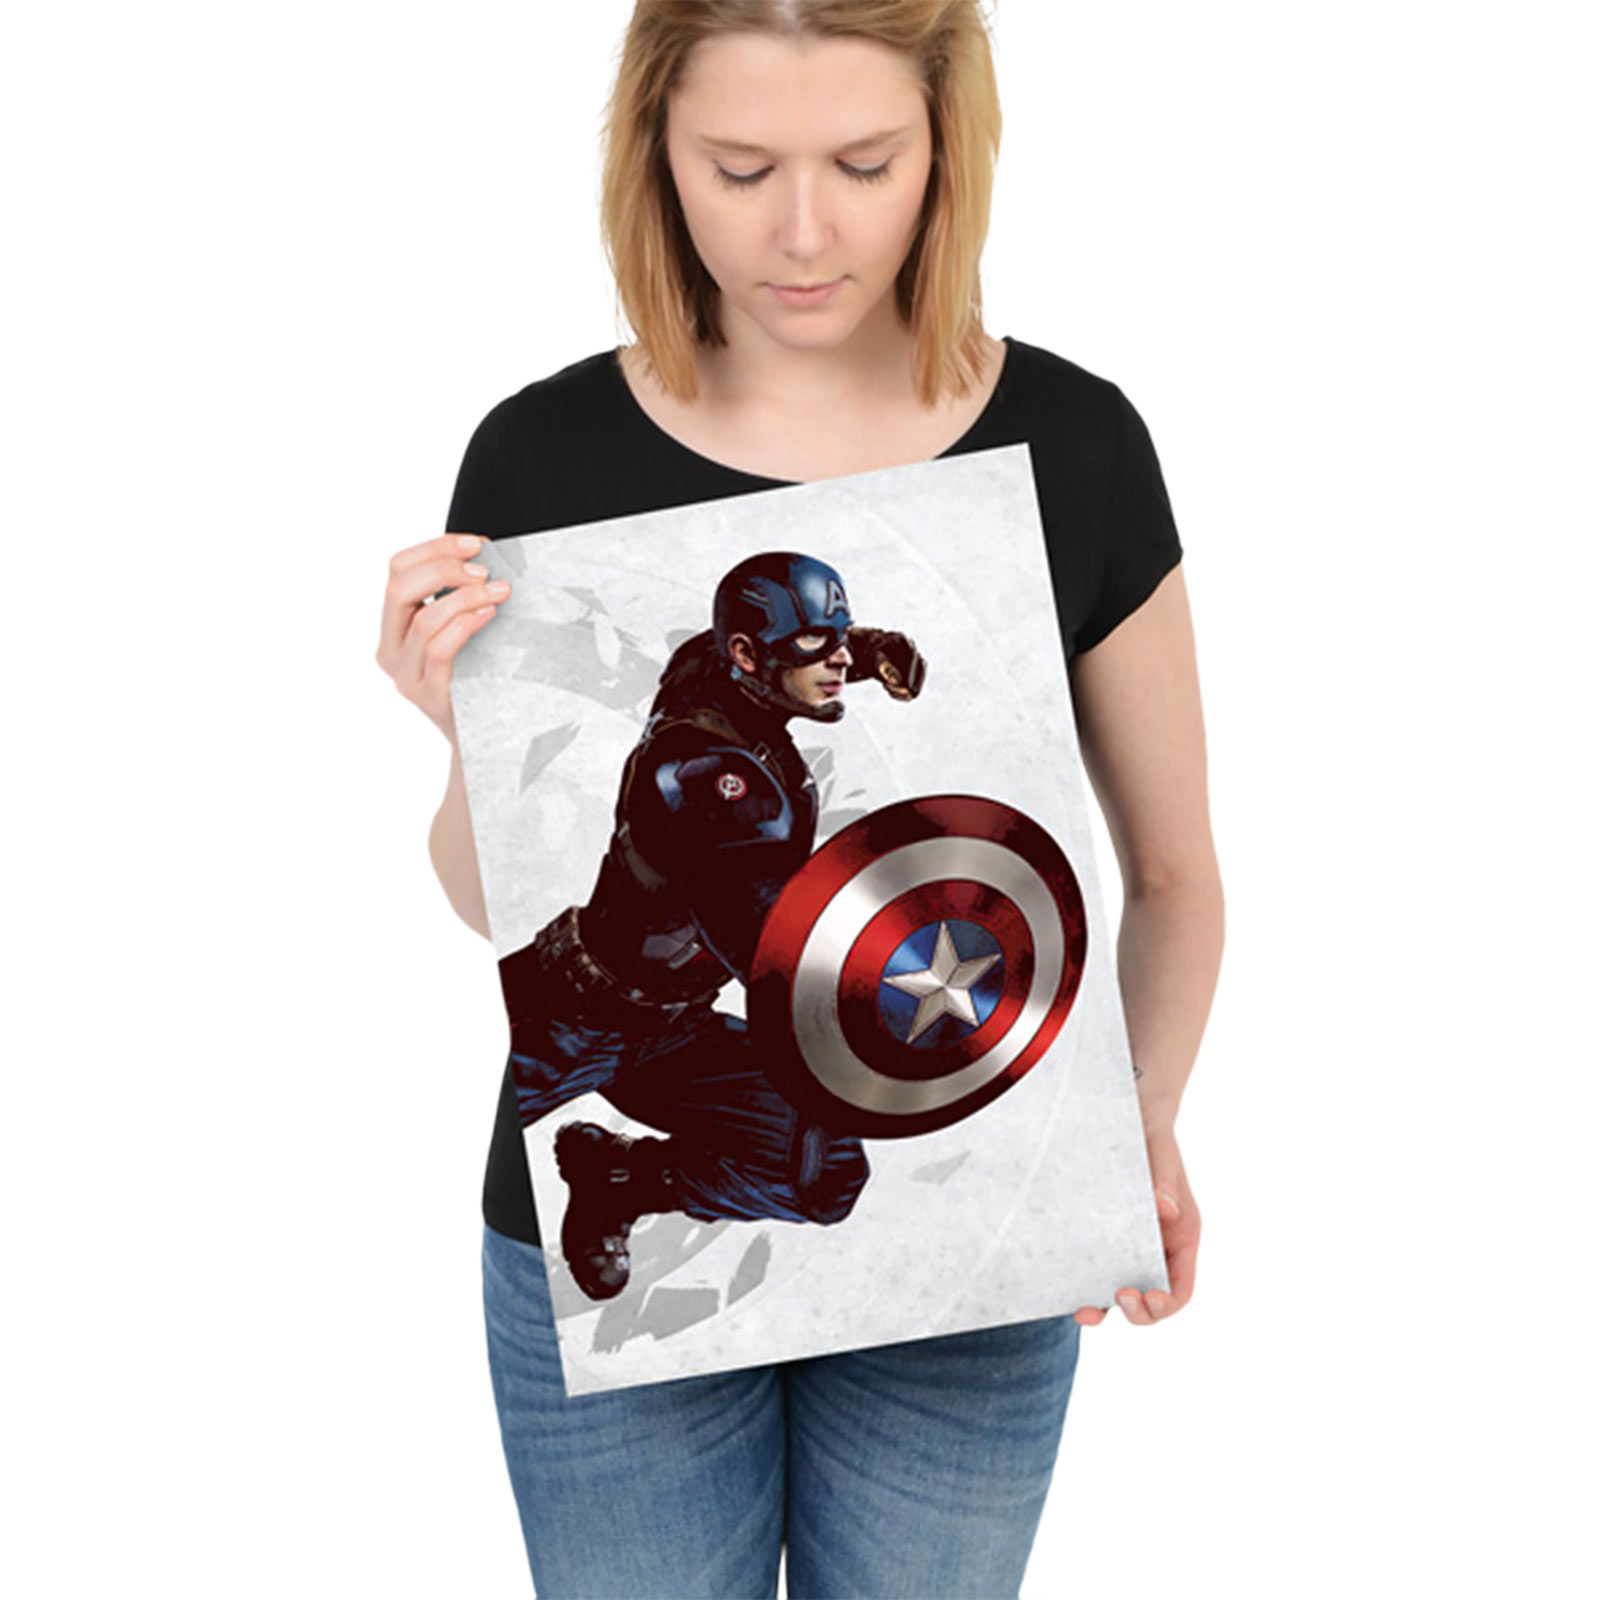 Captain America - Civil War Metal Poster